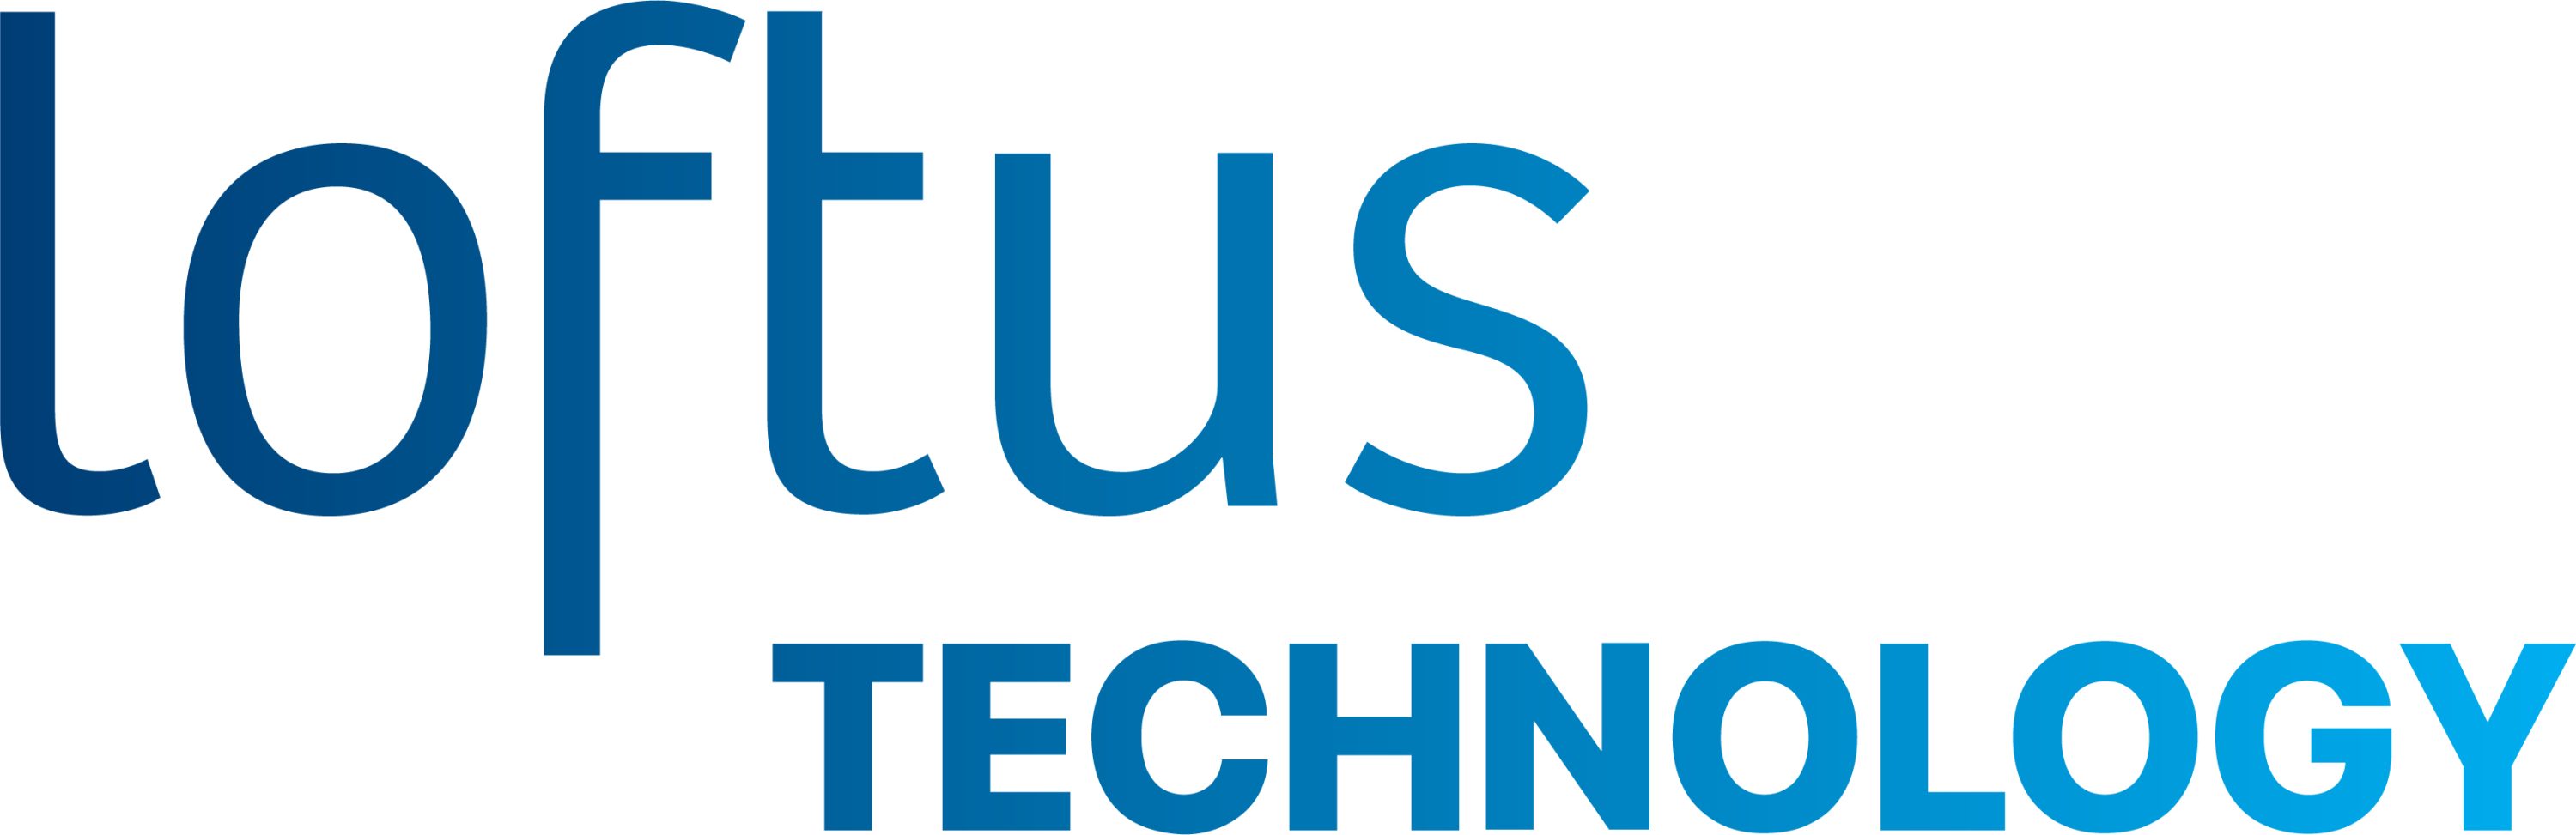 Loftus IT logo